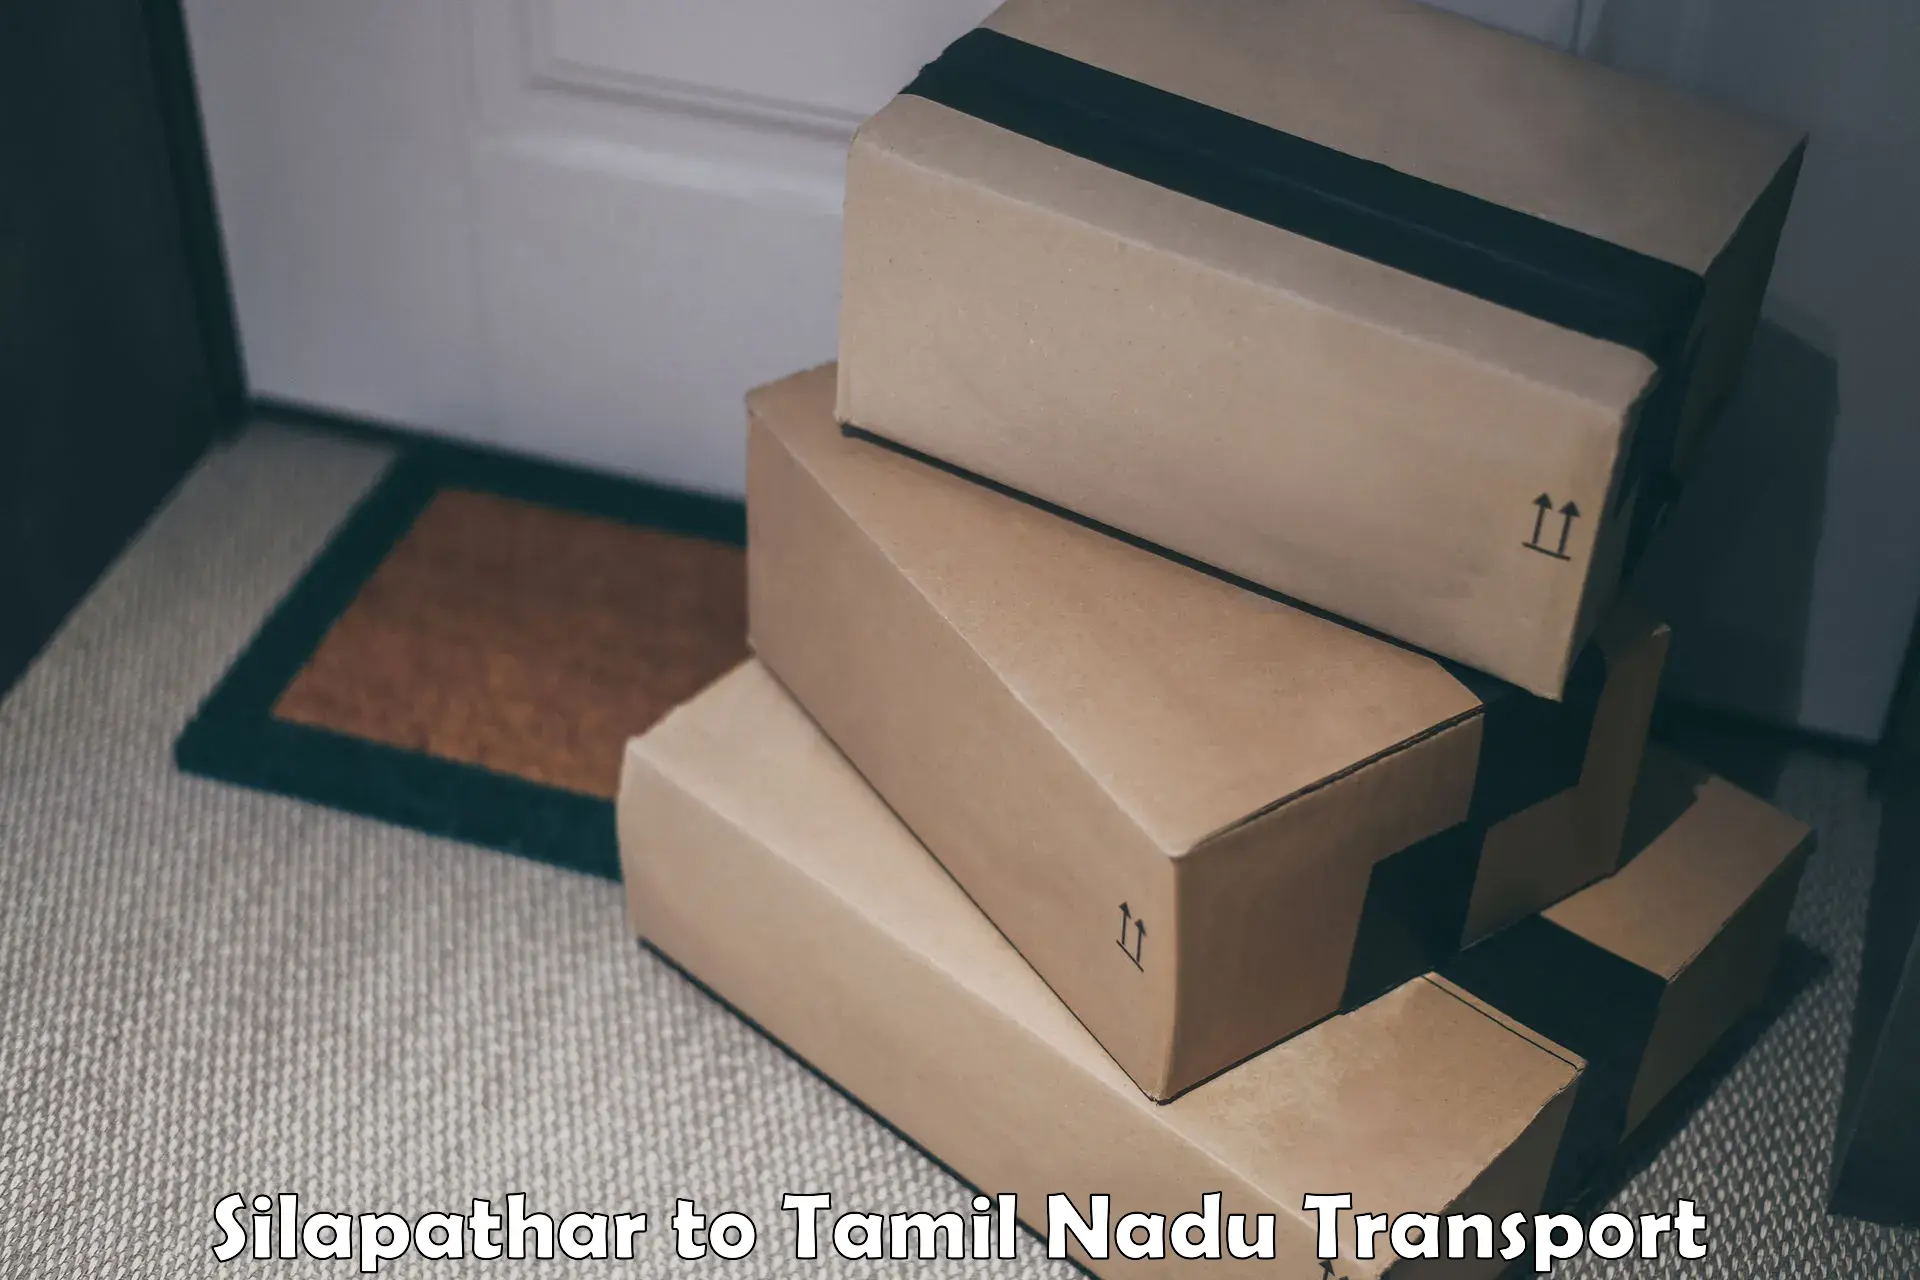 Shipping partner Silapathar to Tamil Nadu